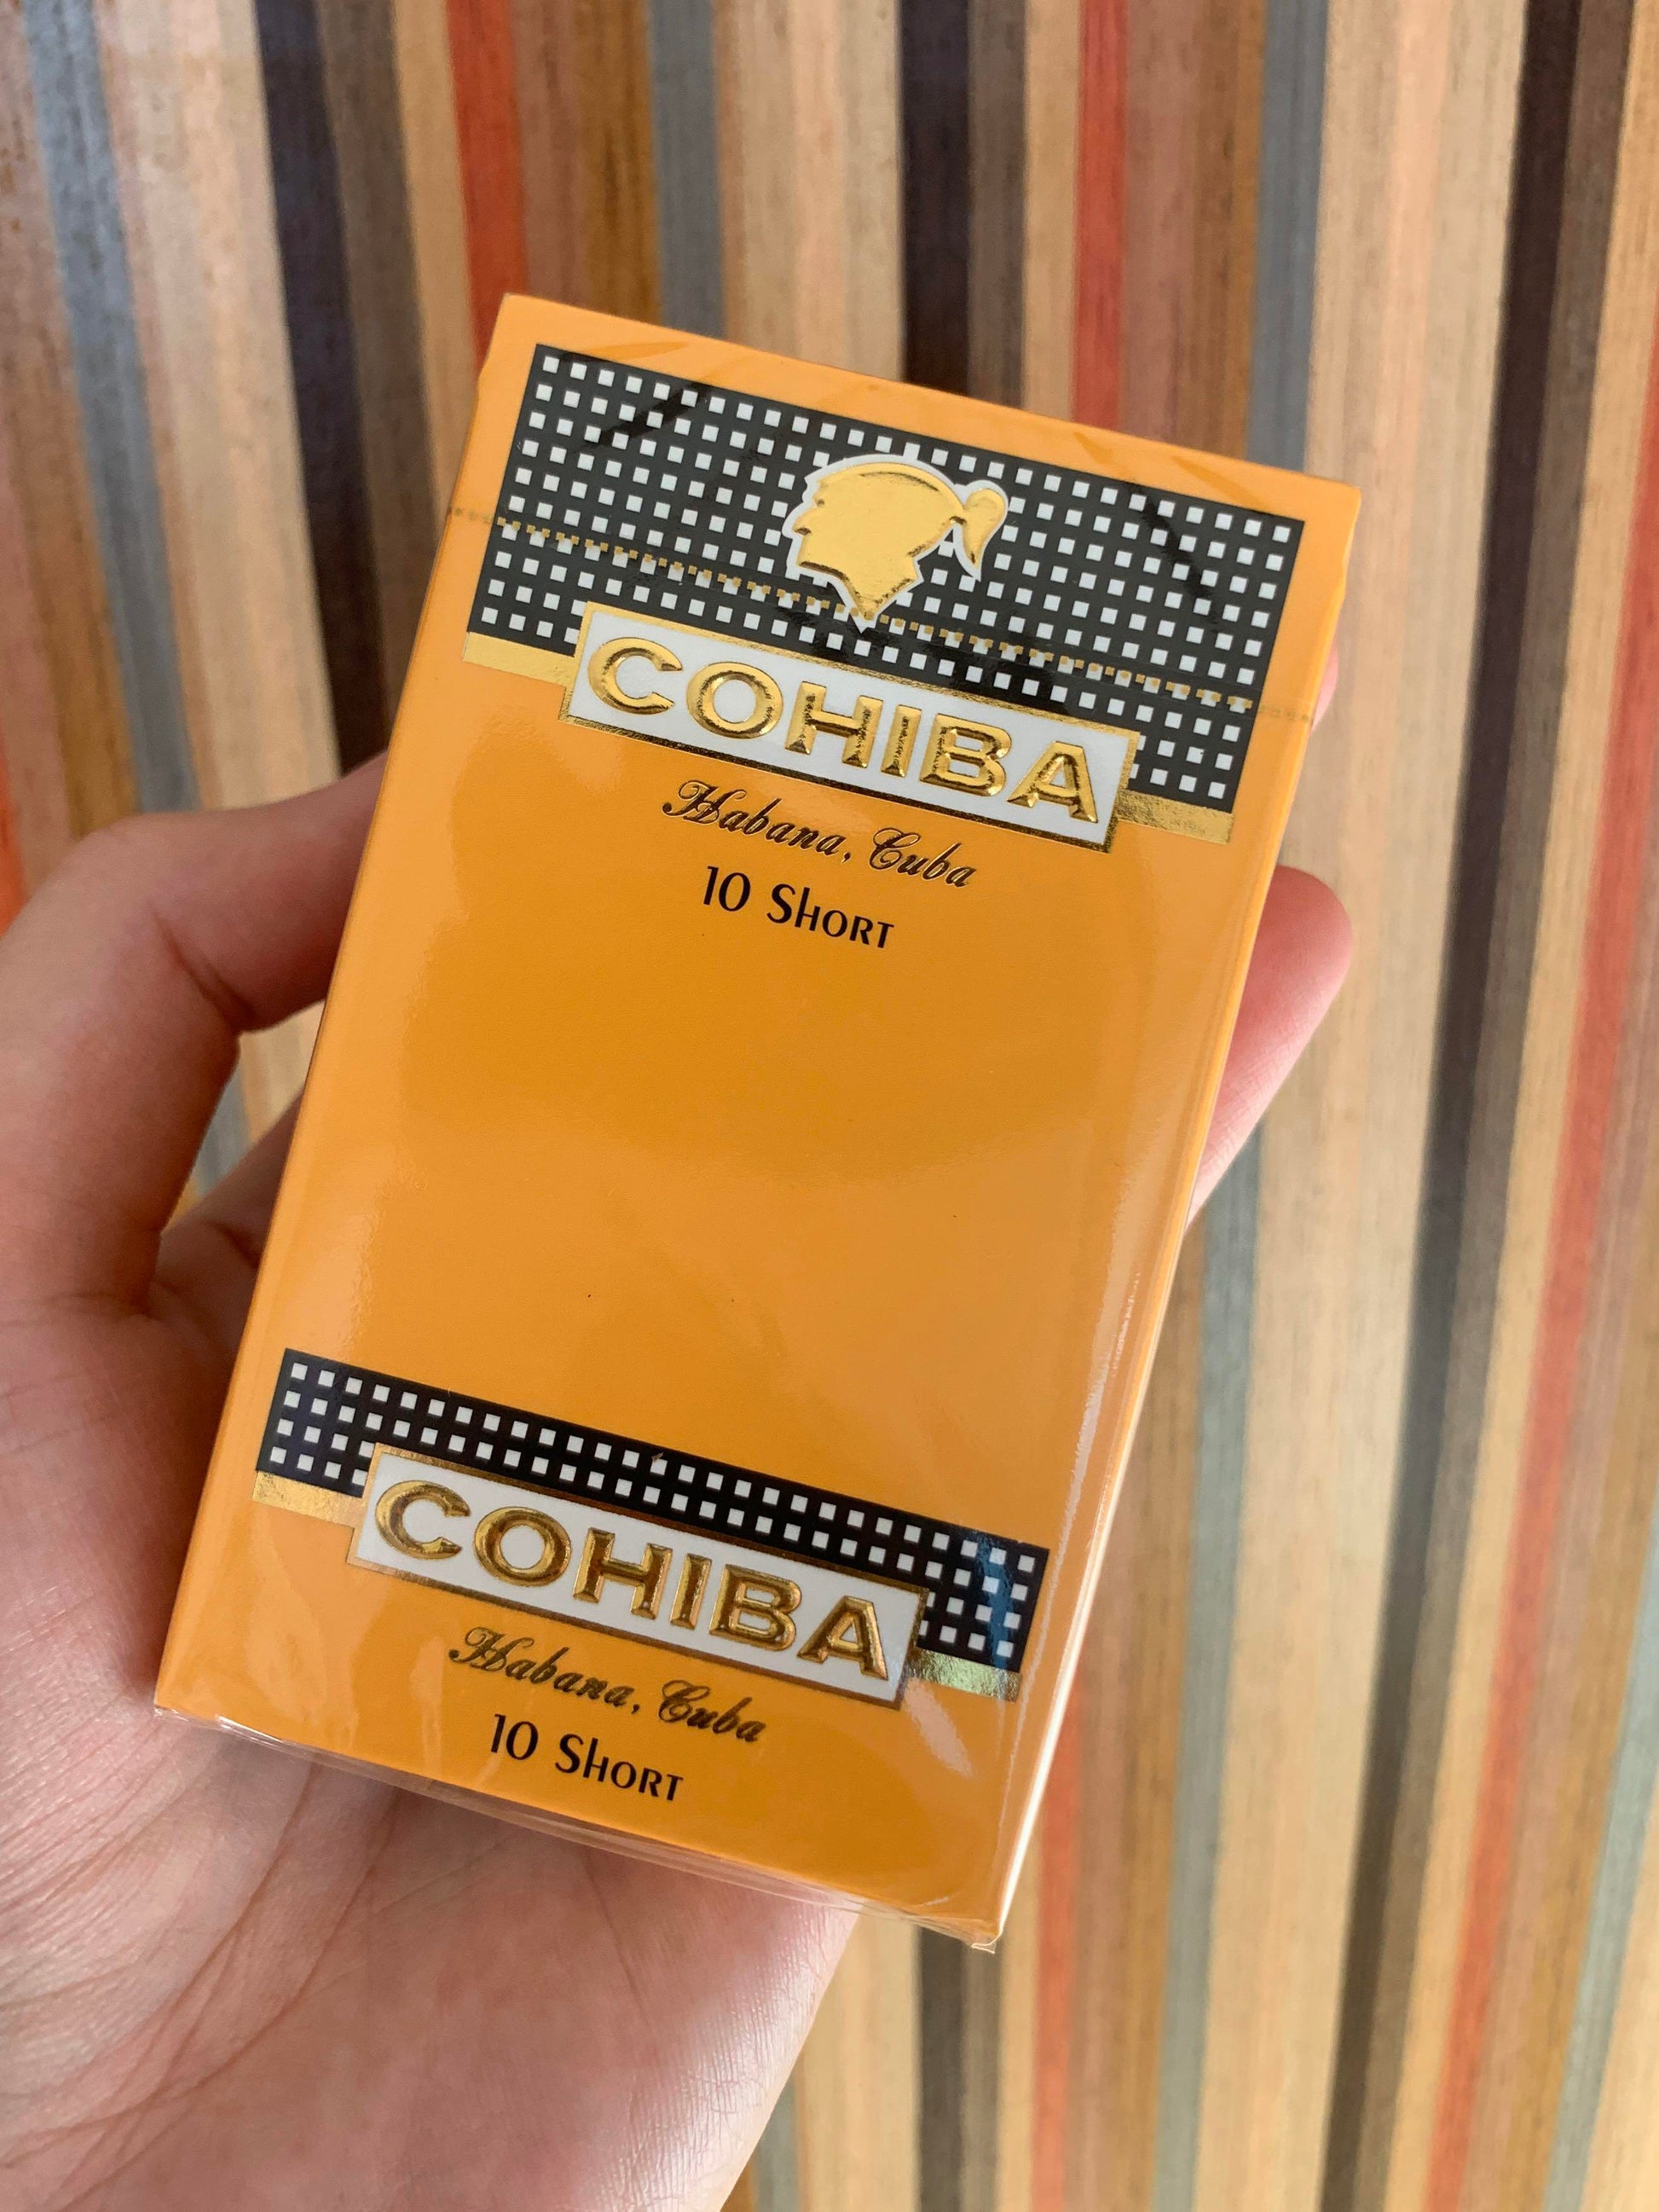 免費鑒定回收雪茄  收購各系列古巴雪茄Cigar  高價回收高希霸(Cohiba)系列雪茄